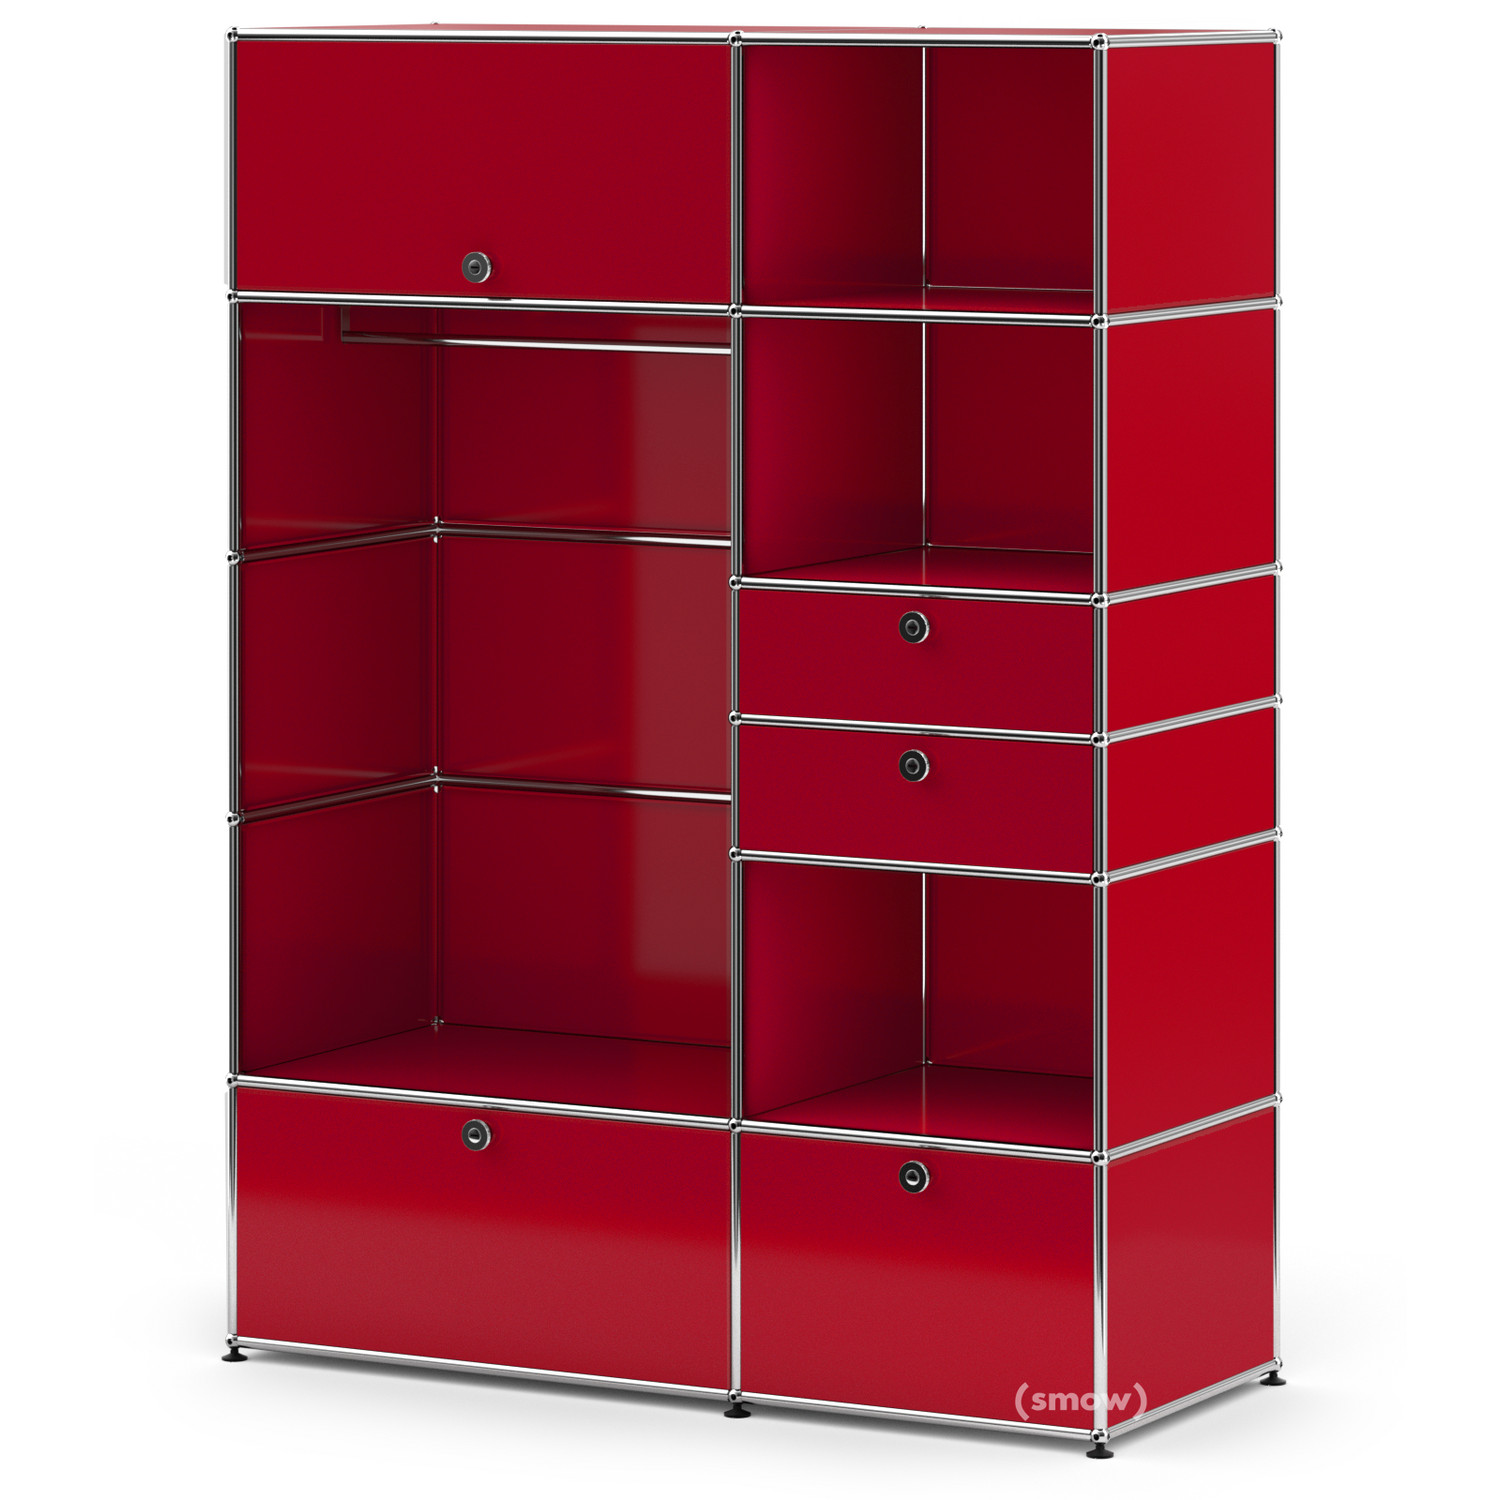 USM Haller Wardrobe Model I, USM ruby red | USM Haller | USM Haller  Wardrobes - Designer furniture from